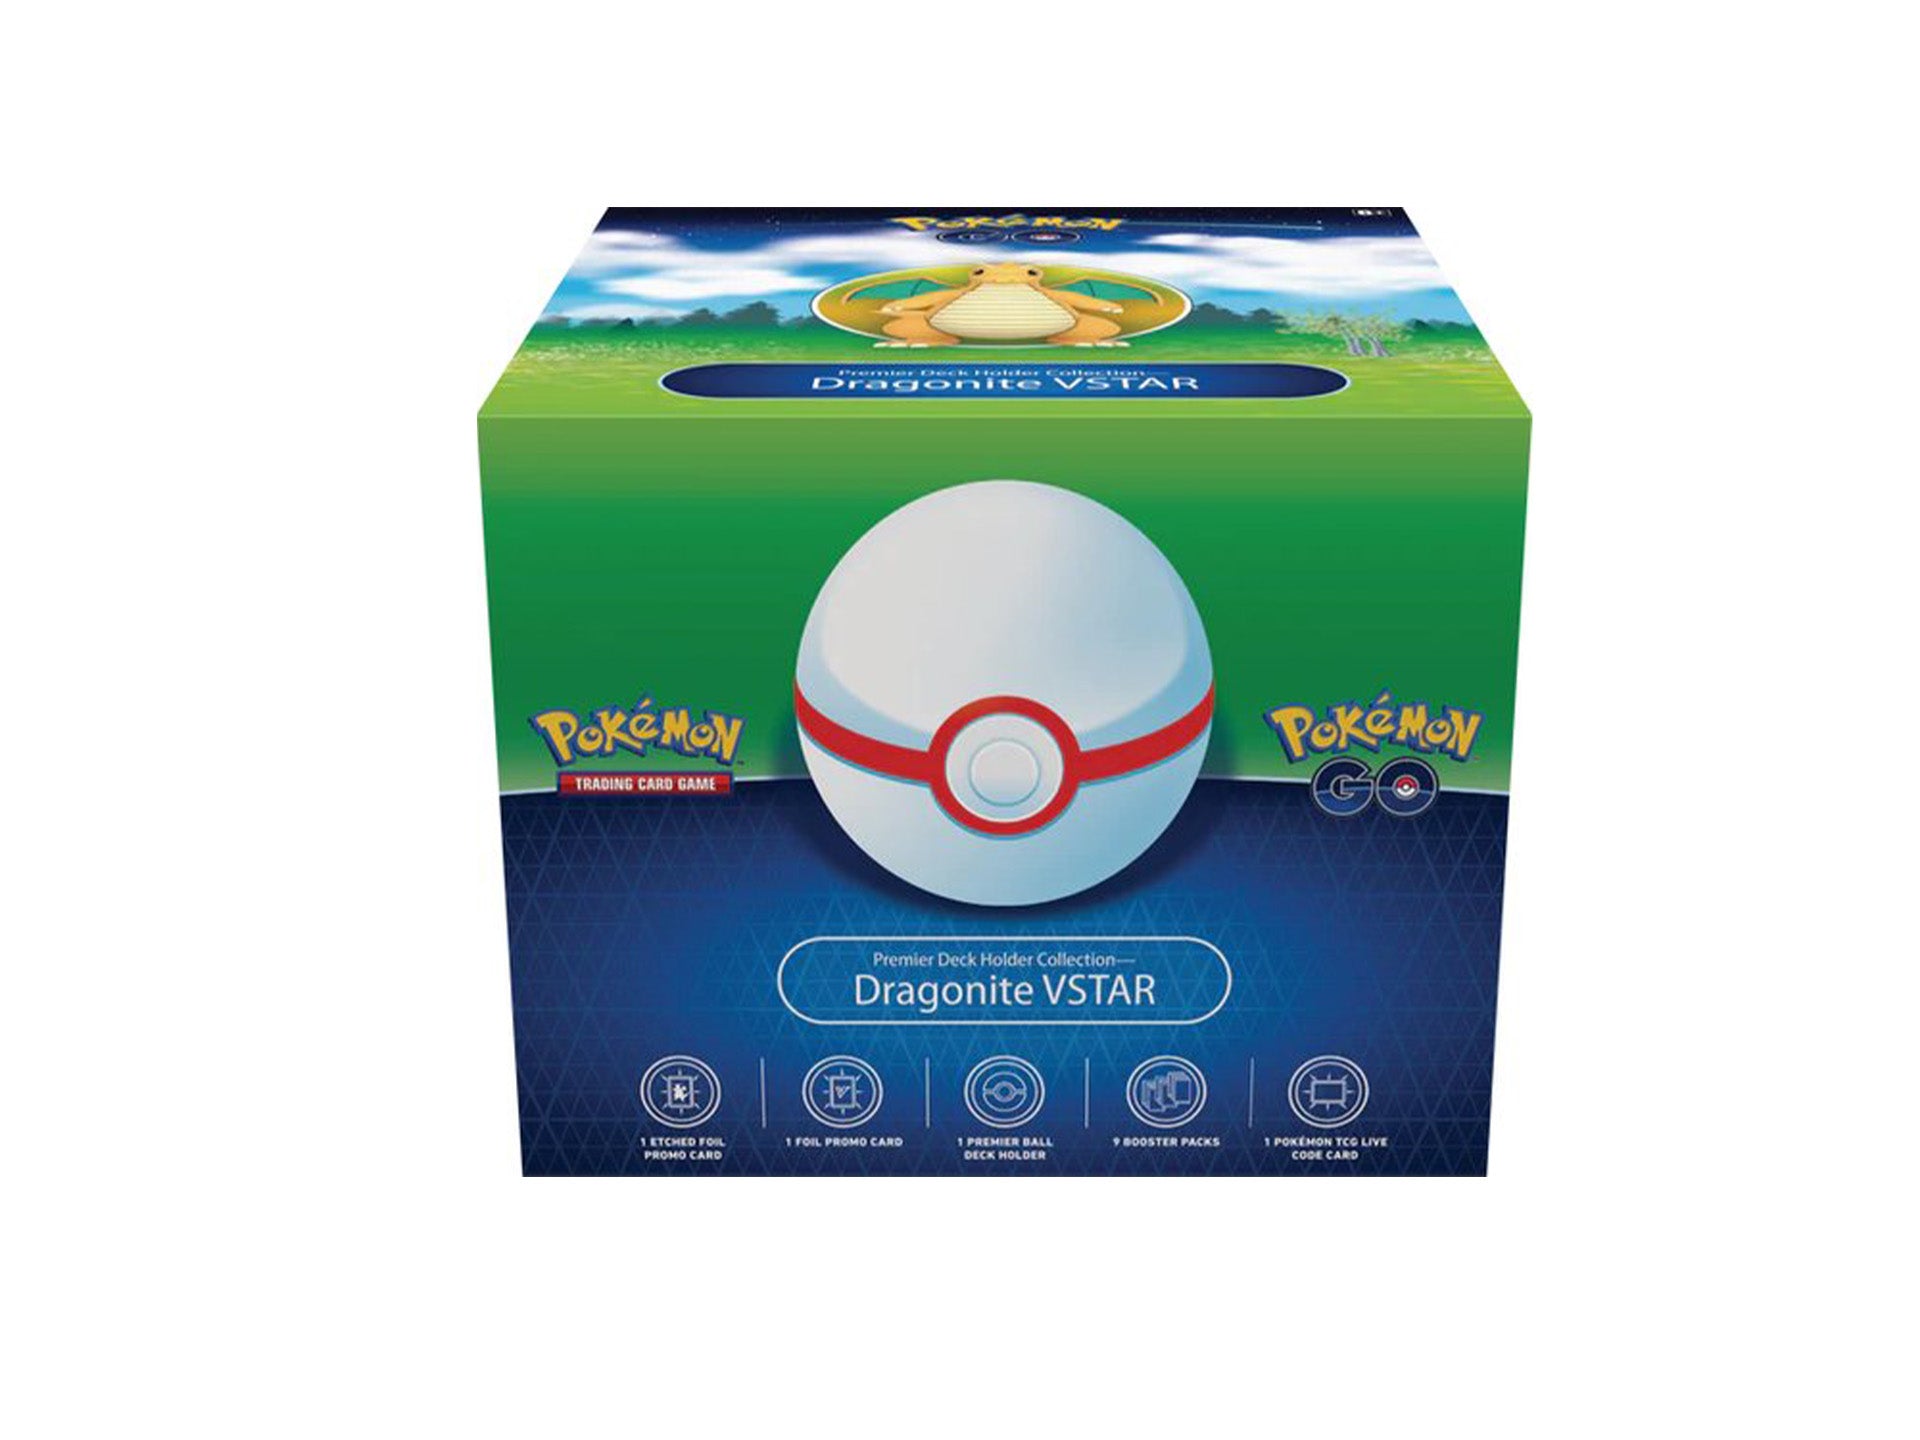 Pokémon Go Dragonite Vstar Premier Deck Holder Collection